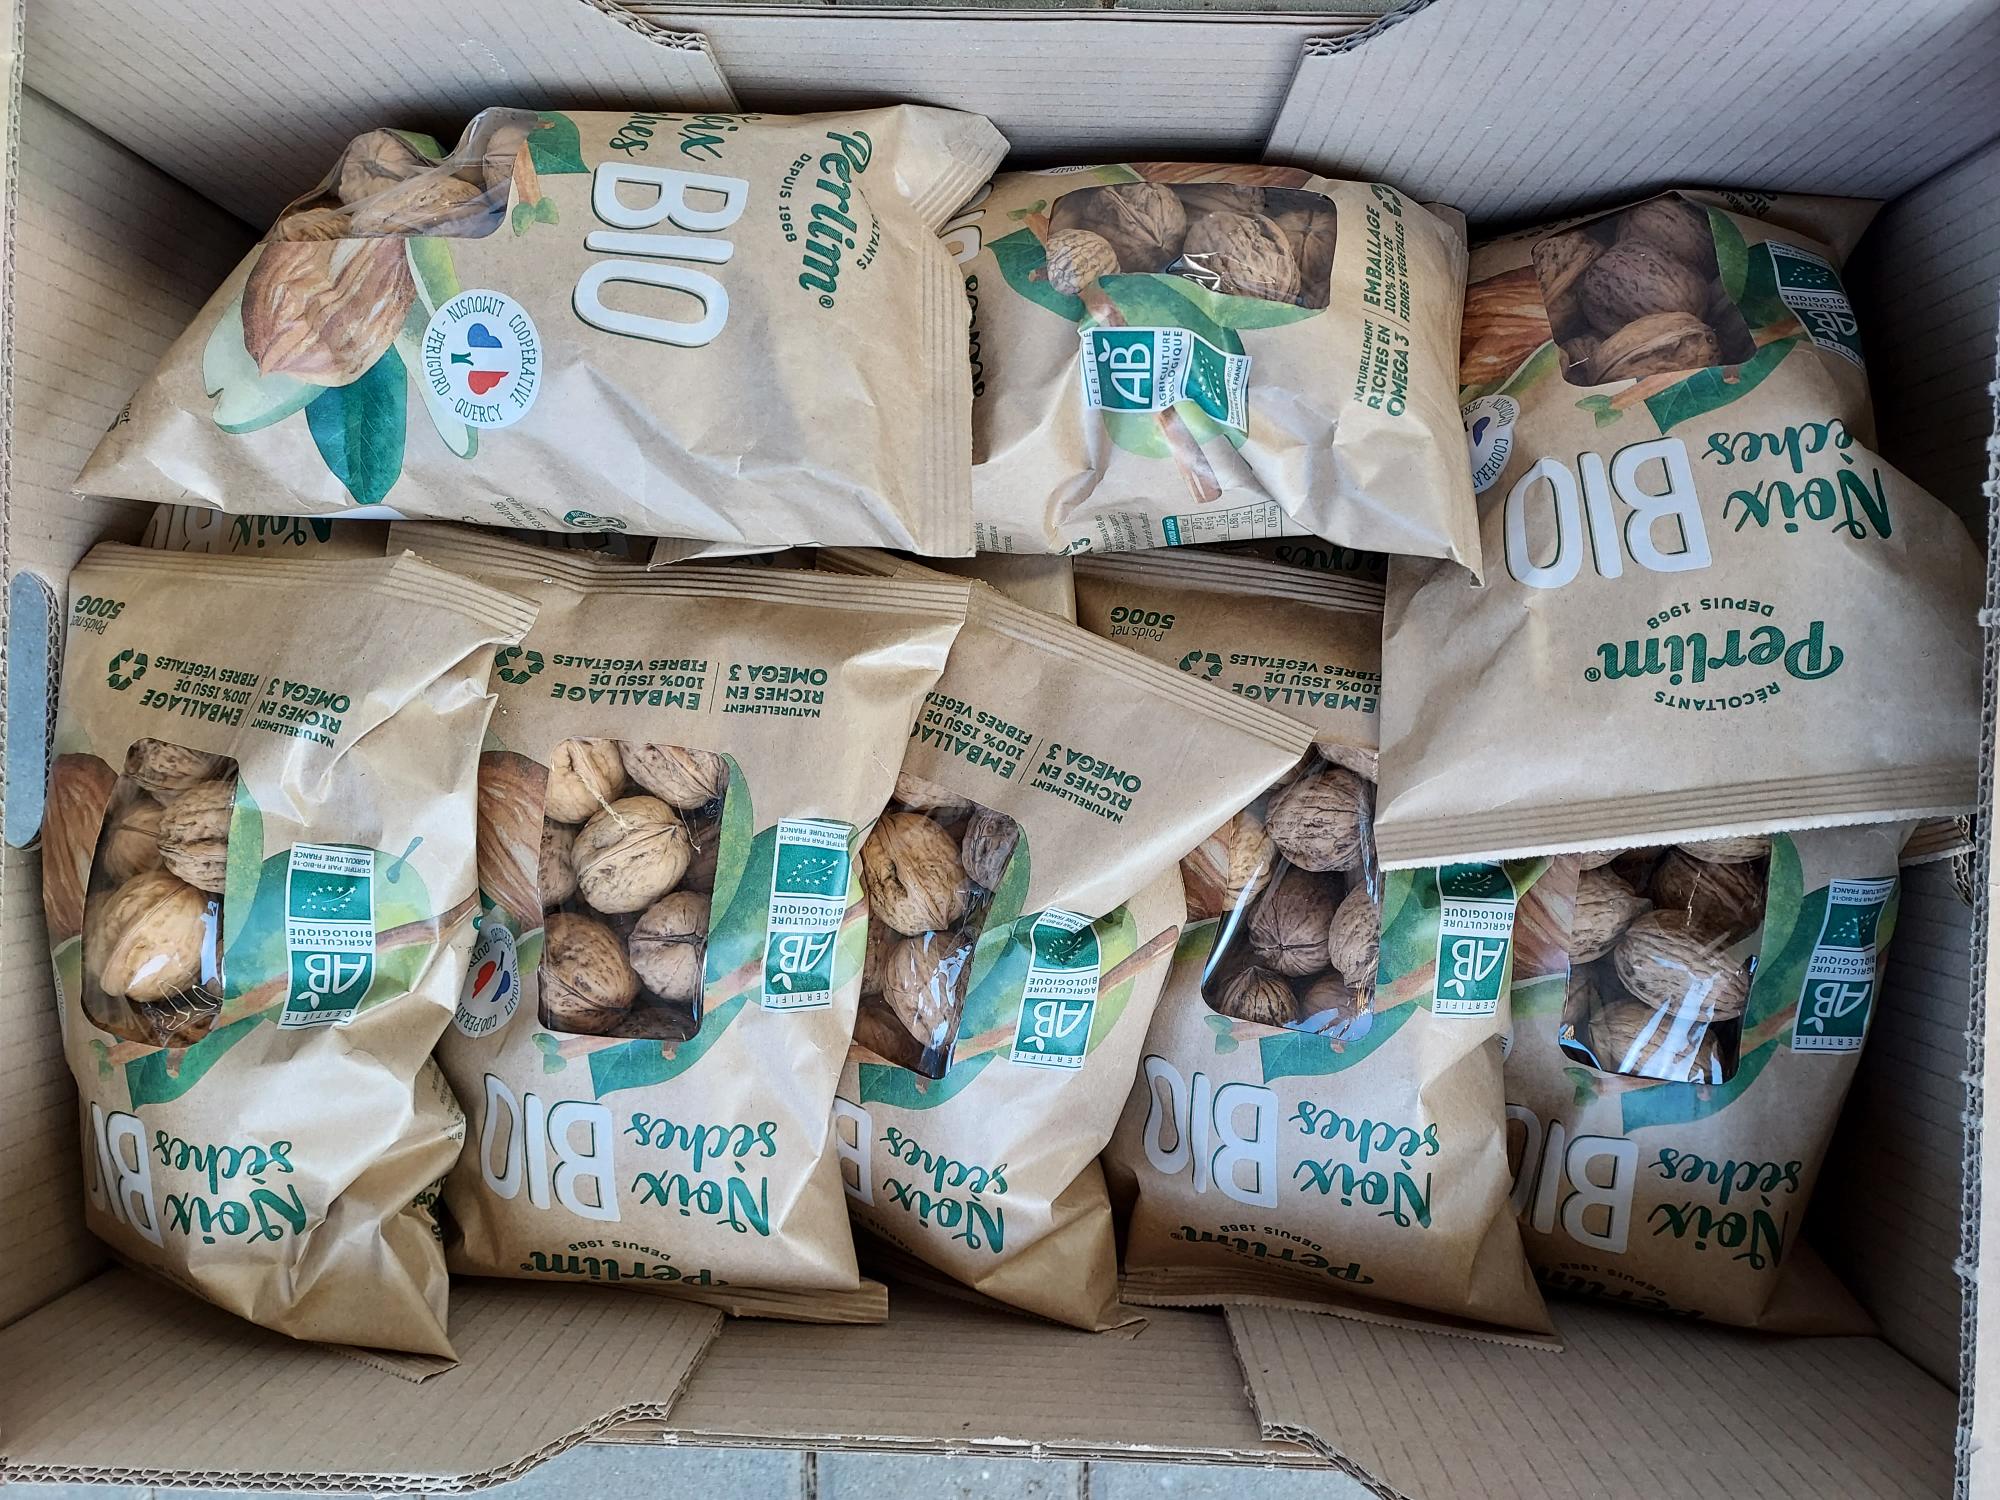 Organic walnuts in shell, France, assortment 32-34mm